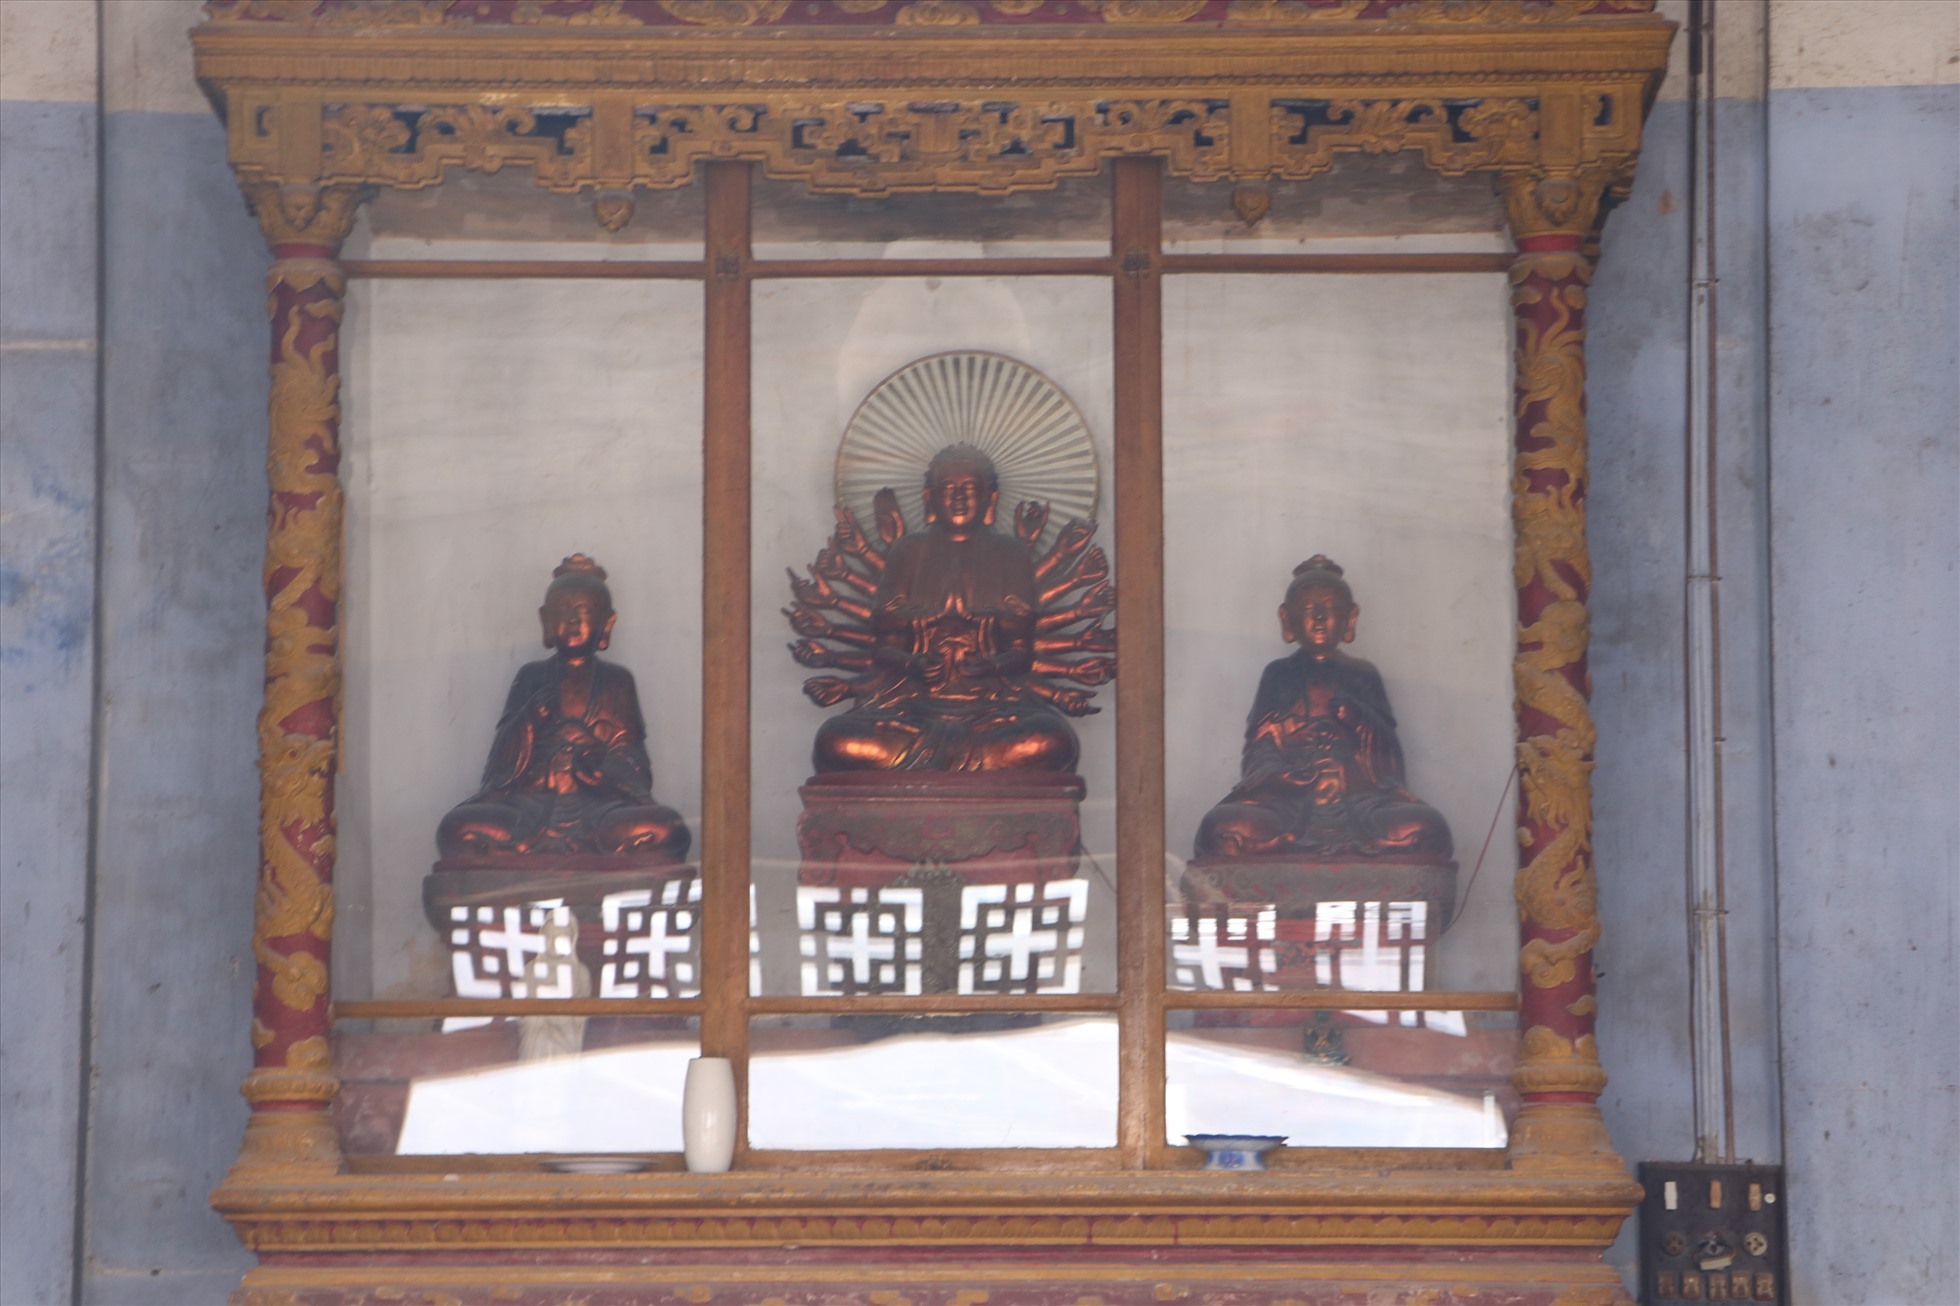 Việc dịch chuyển ngôi chánh điện cũ nhằm bảo vệ lại bức bích họa “Long vân khế hội” cũng như những giá trị lịch sử của chùa.